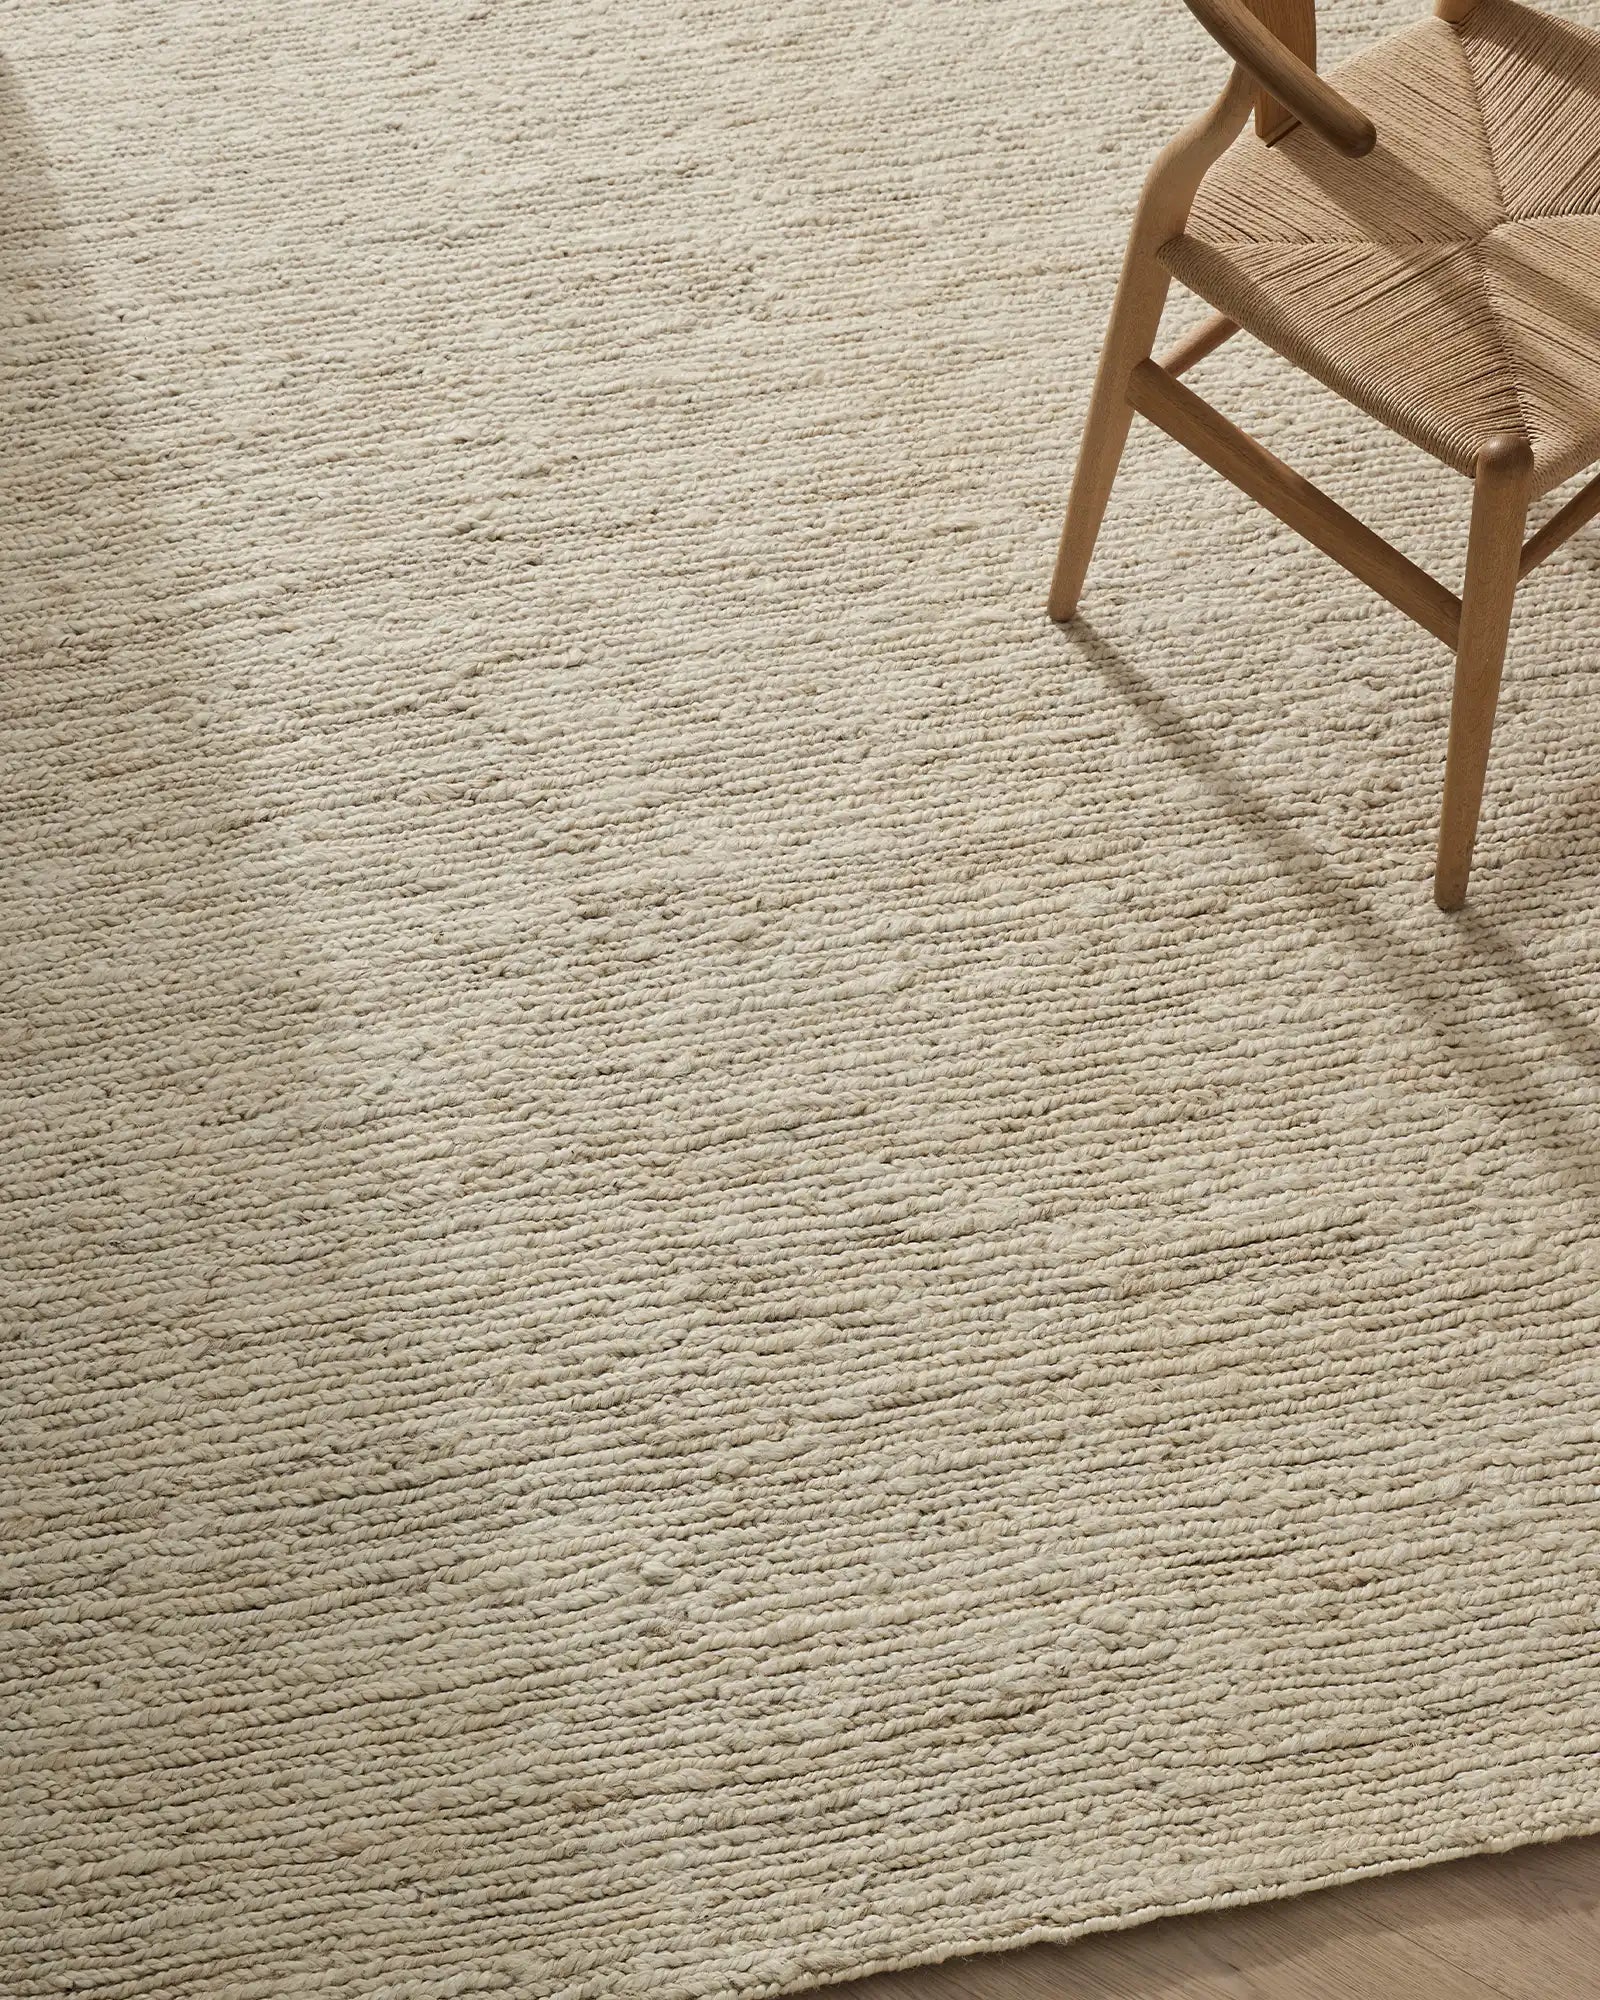 Weave Suffolk Floor Rug - Pearl RSK03PEAR